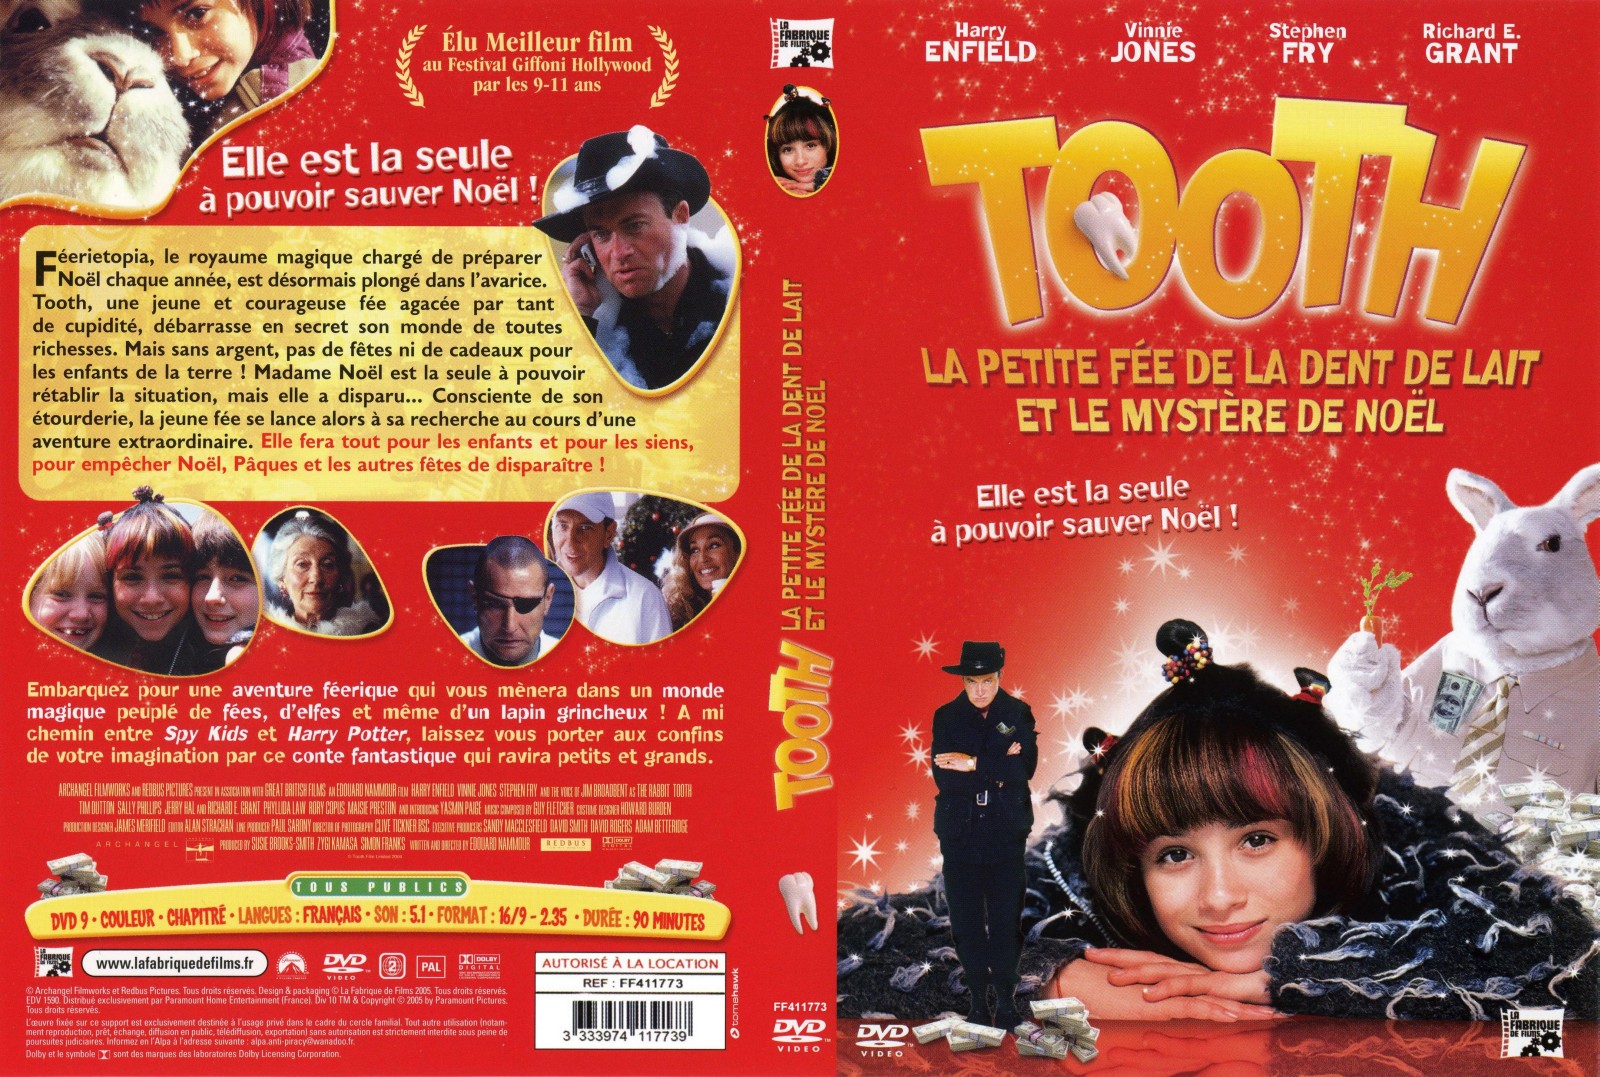 Jaquette DVD Tooth ou la petite fee de la dent de lait et le mystere de noel v2